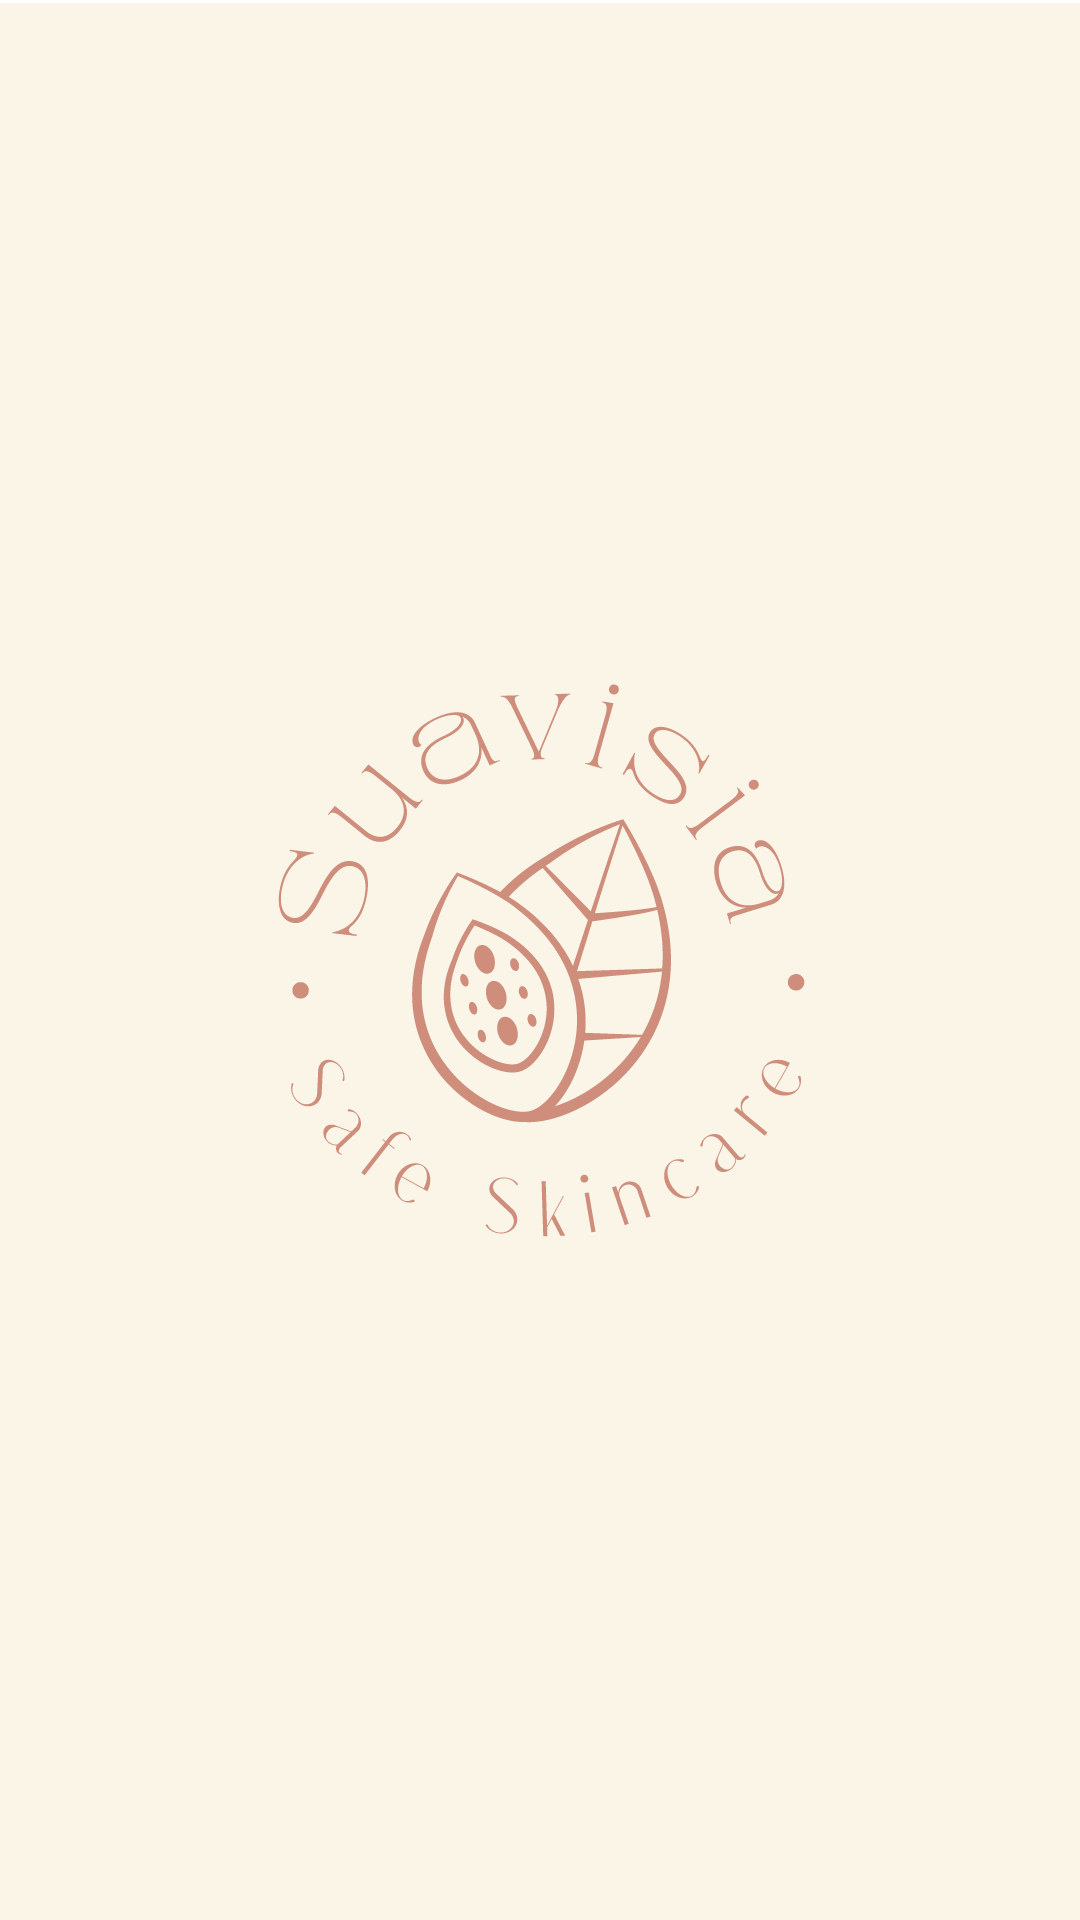 Création du branding de Suavisia, marque de cosmétique française